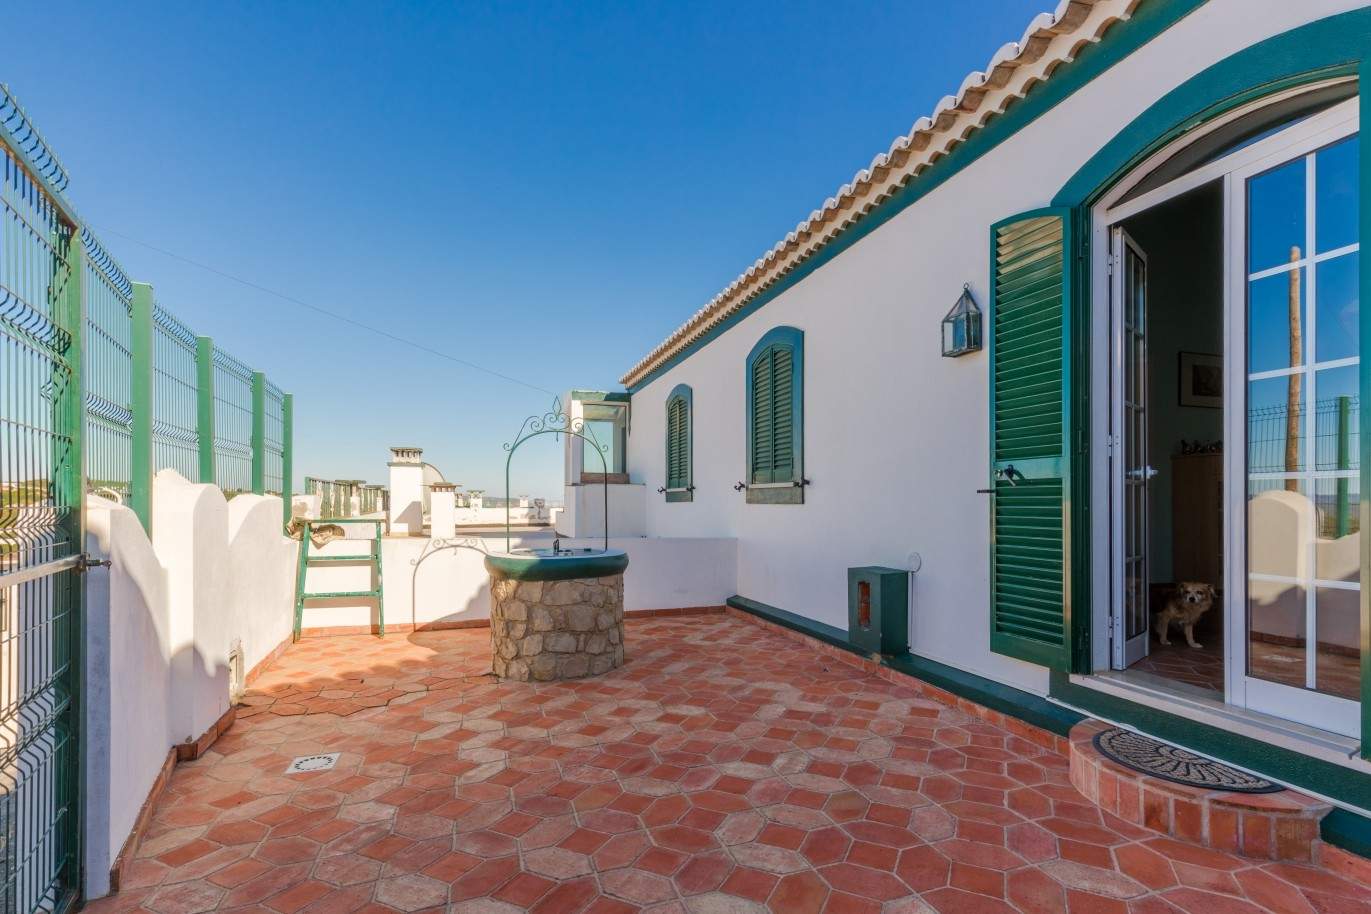 Detached villa for sale, country views, Loulé, Algarve, Portugal_67629